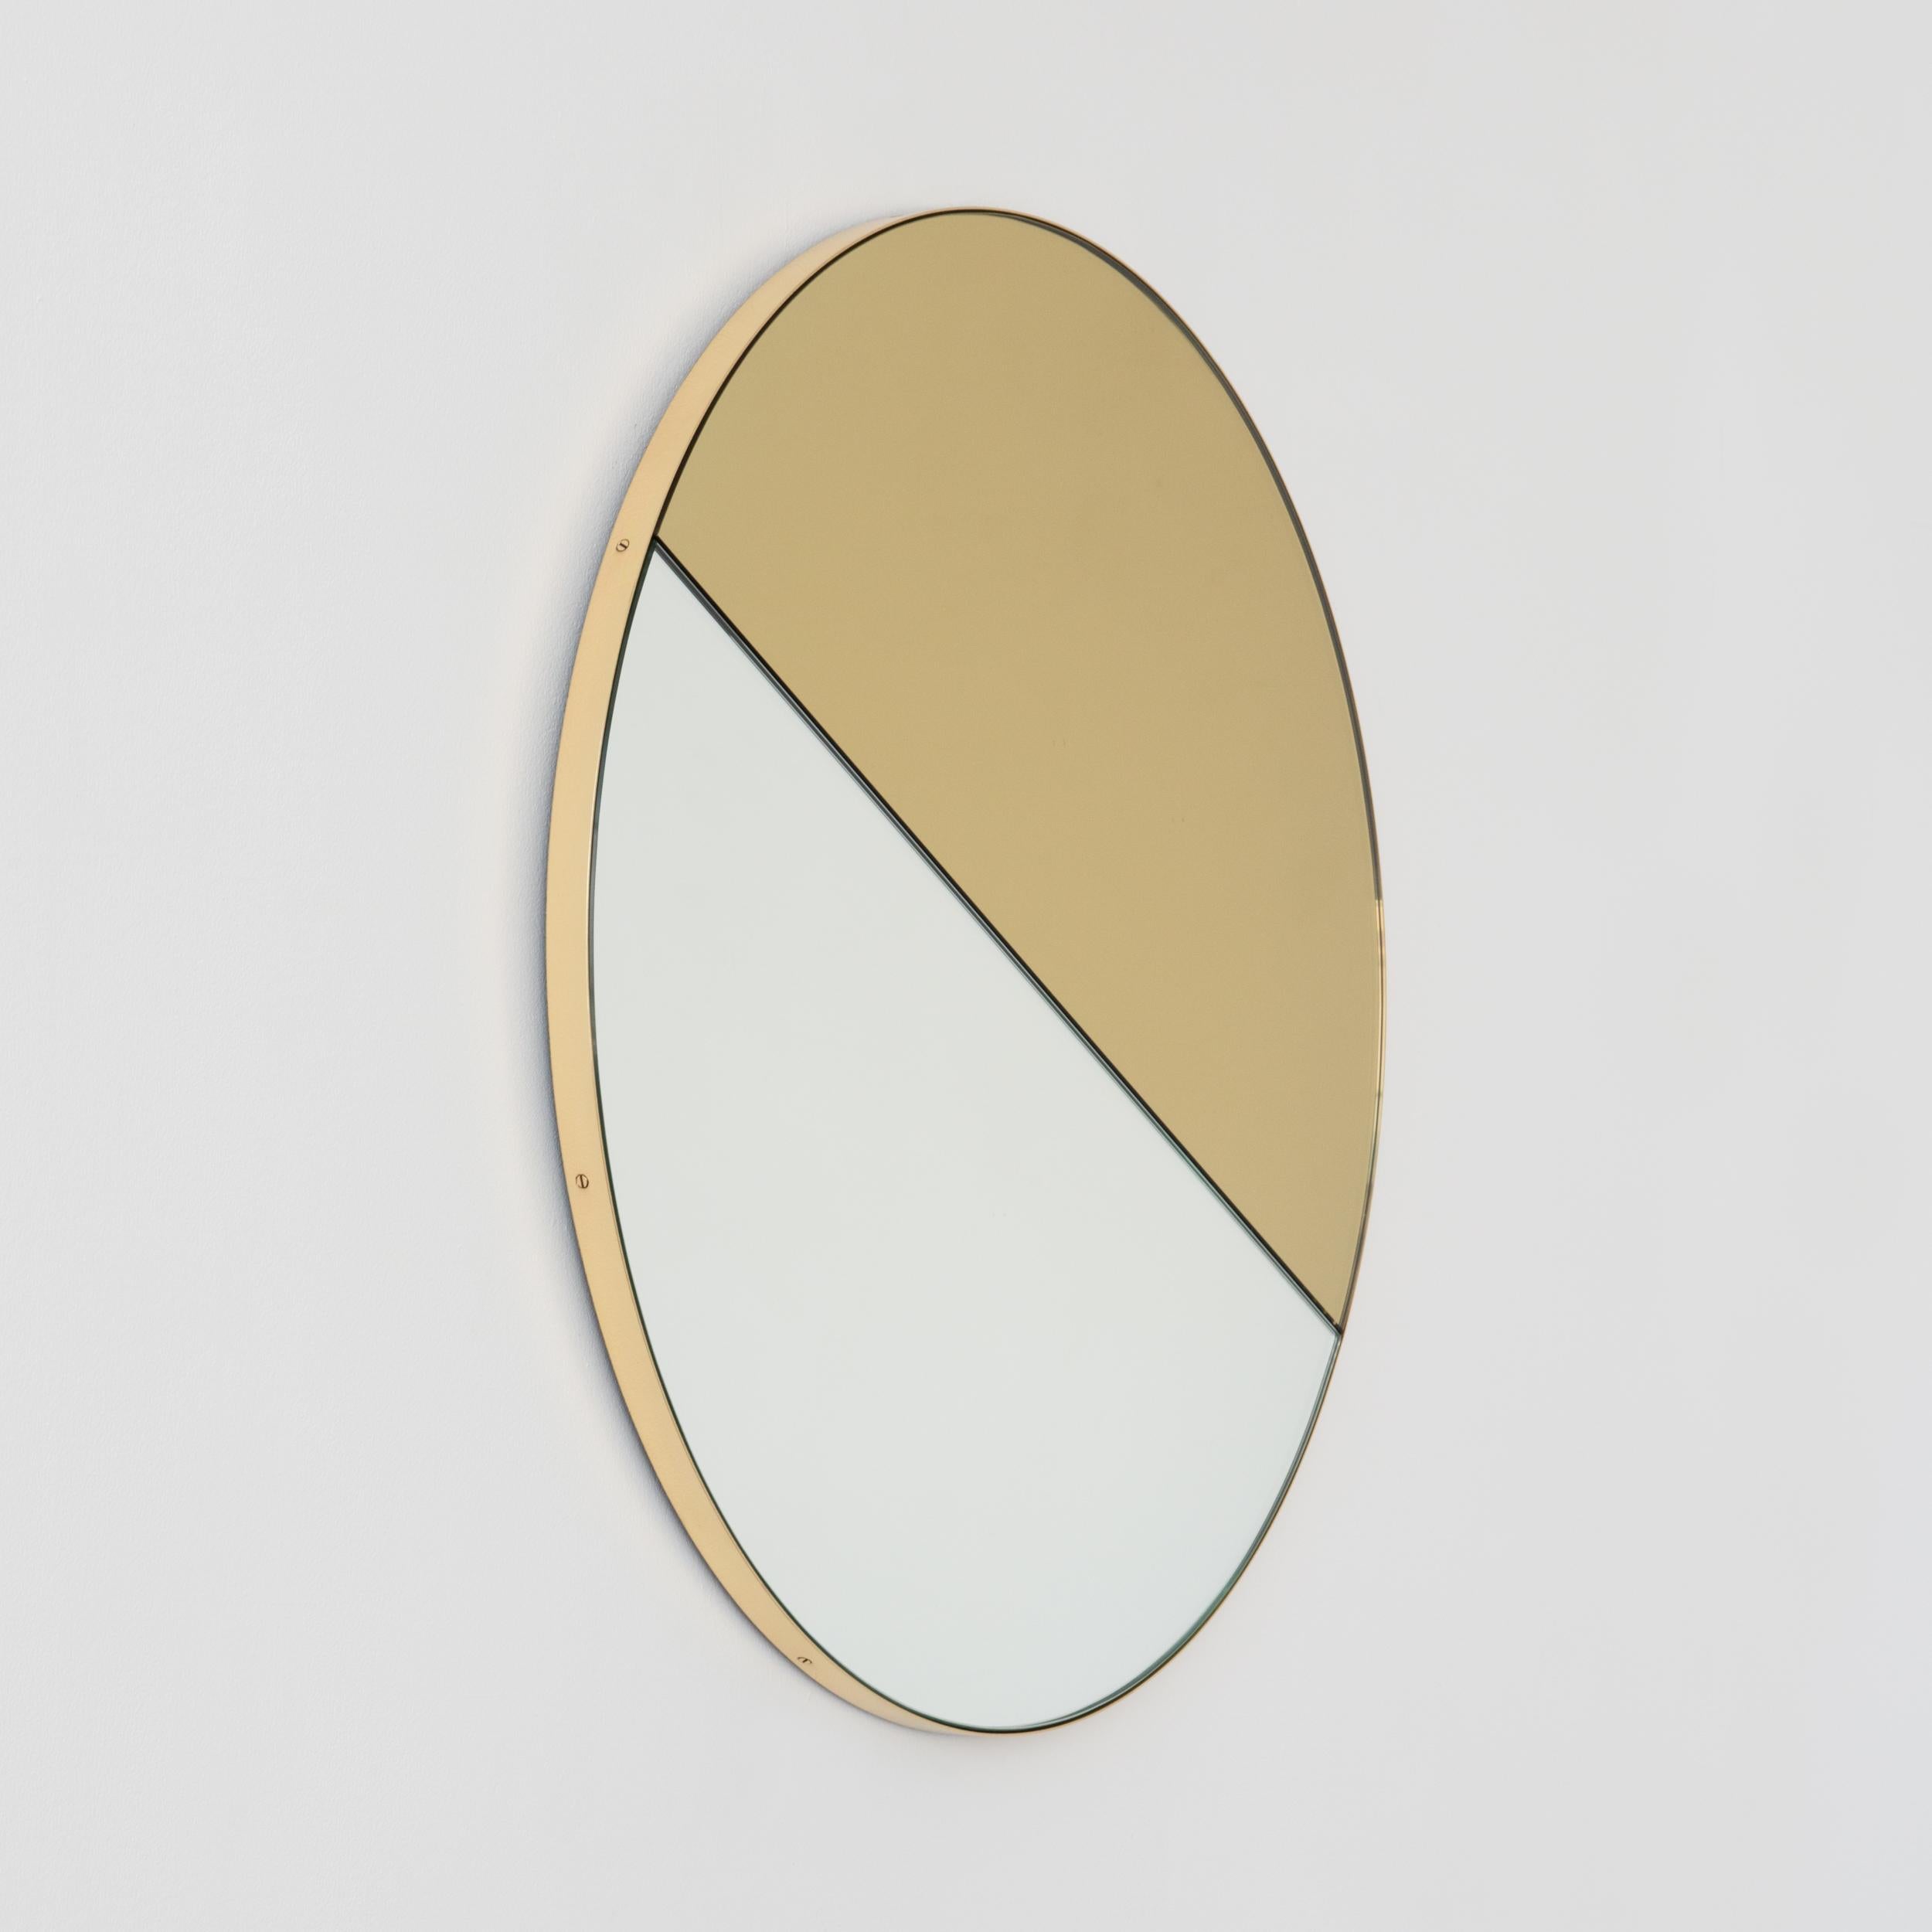 Miroir contemporain teinté mixte or et argent Orbis Dualis™ avec un élégant cadre en laiton massif brossé. Livré entièrement équipé d'un système d'accrochage spécialisé qui permet de suspendre le miroir dans quatre positions différentes. Conçu et